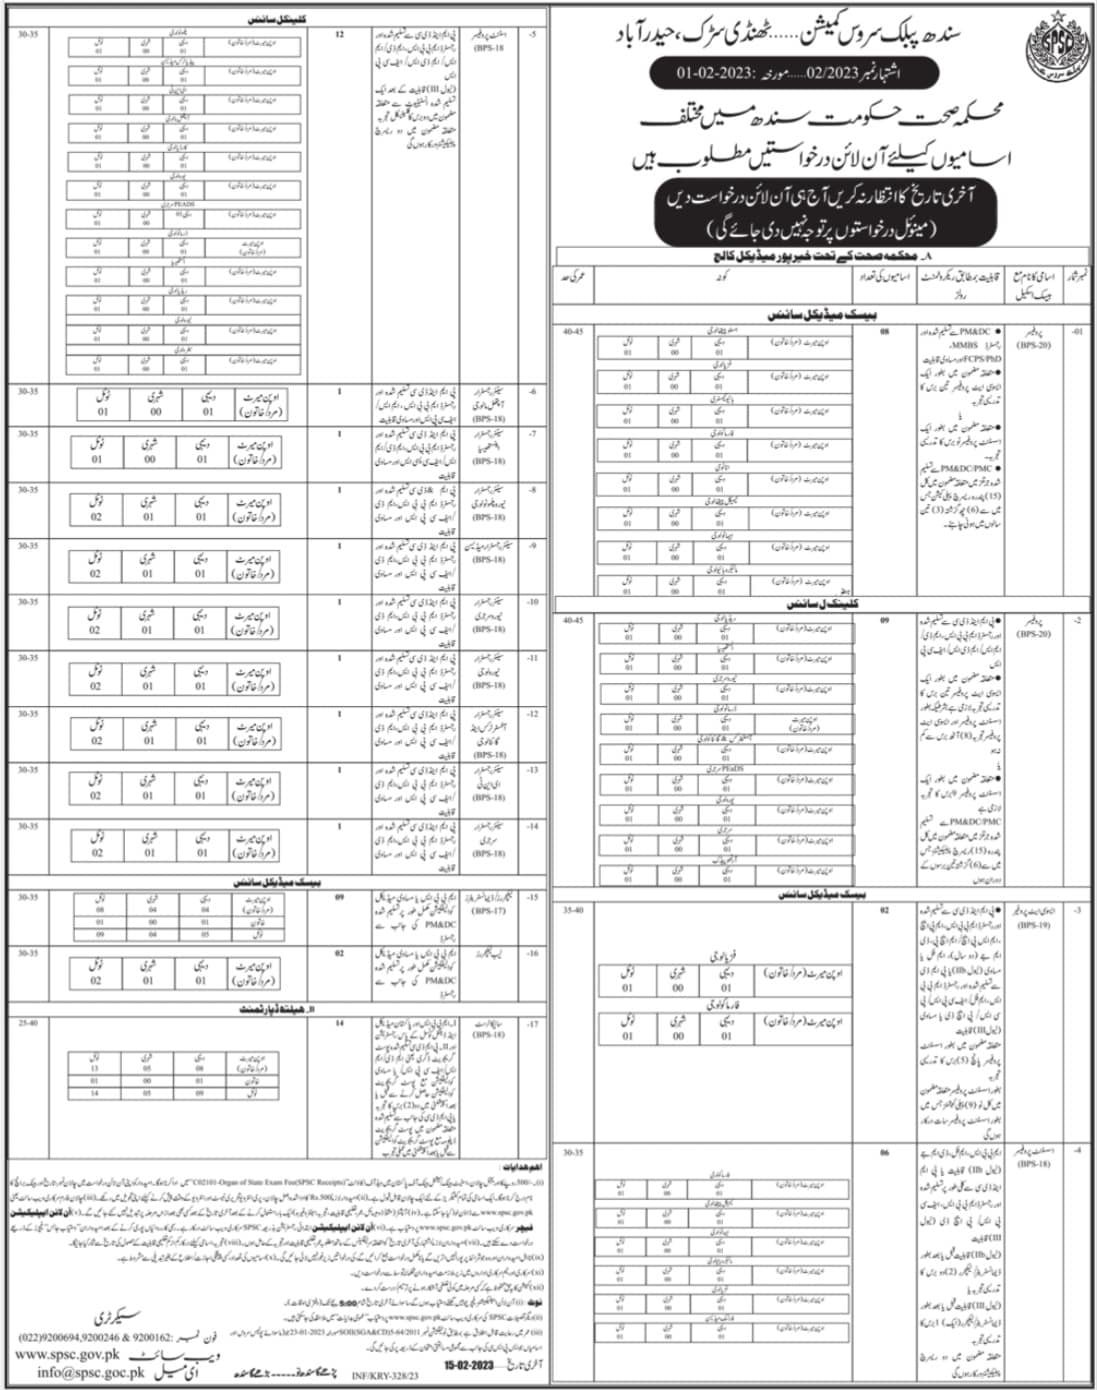 Sindh Public Service Commission SPSC jobs 2023 – www.spsc.gov.pk